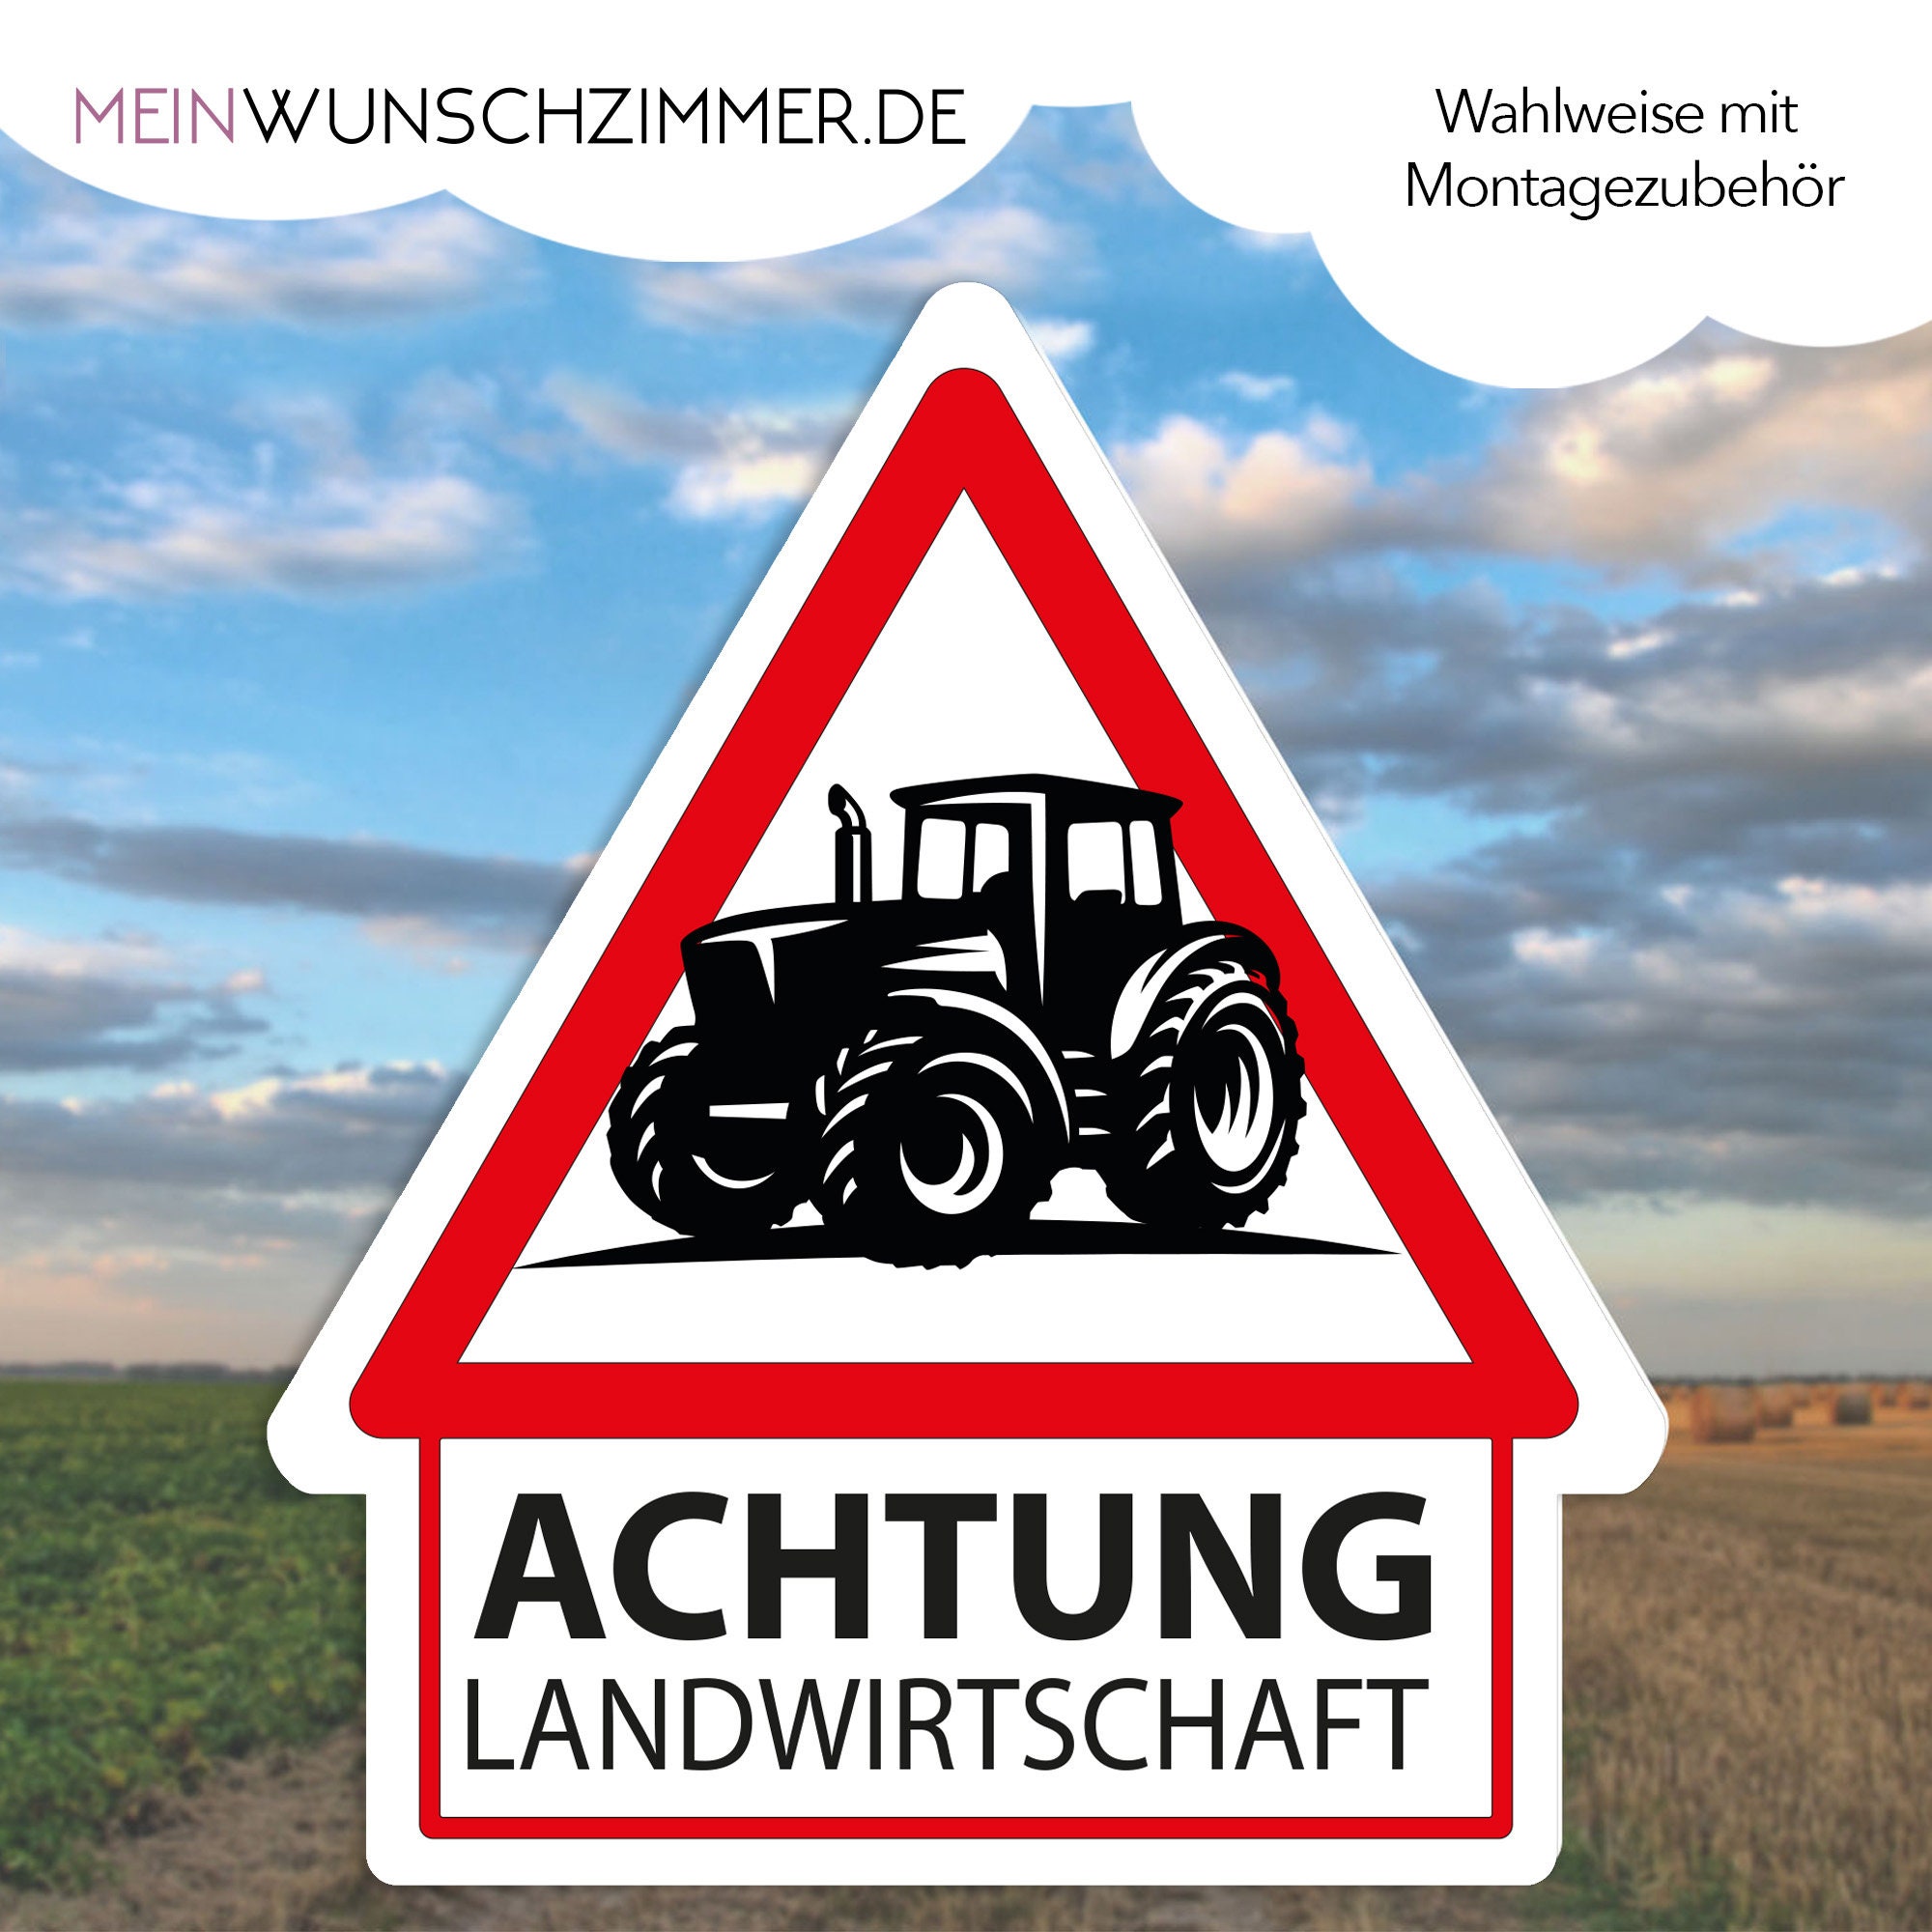 Landwirtschaftliche landwirtschaft - .de